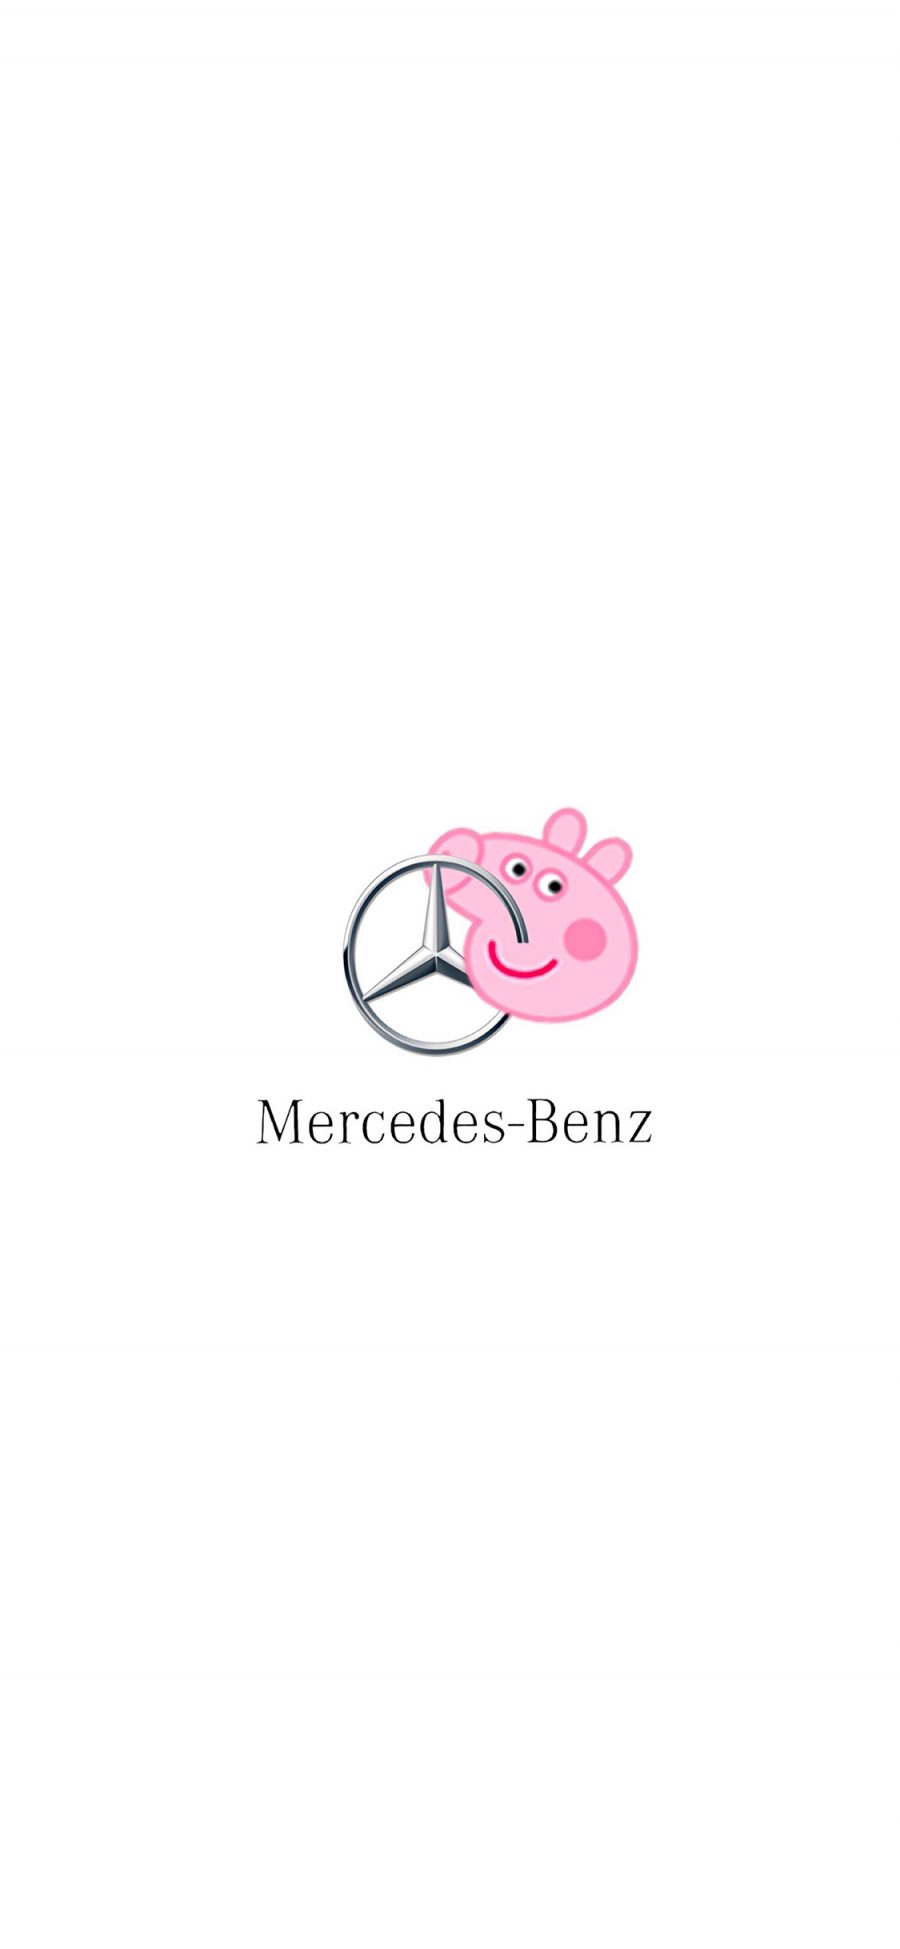 [2436×1125]小猪佩奇 奔驰 车标 名车 苹果手机动漫壁纸图片